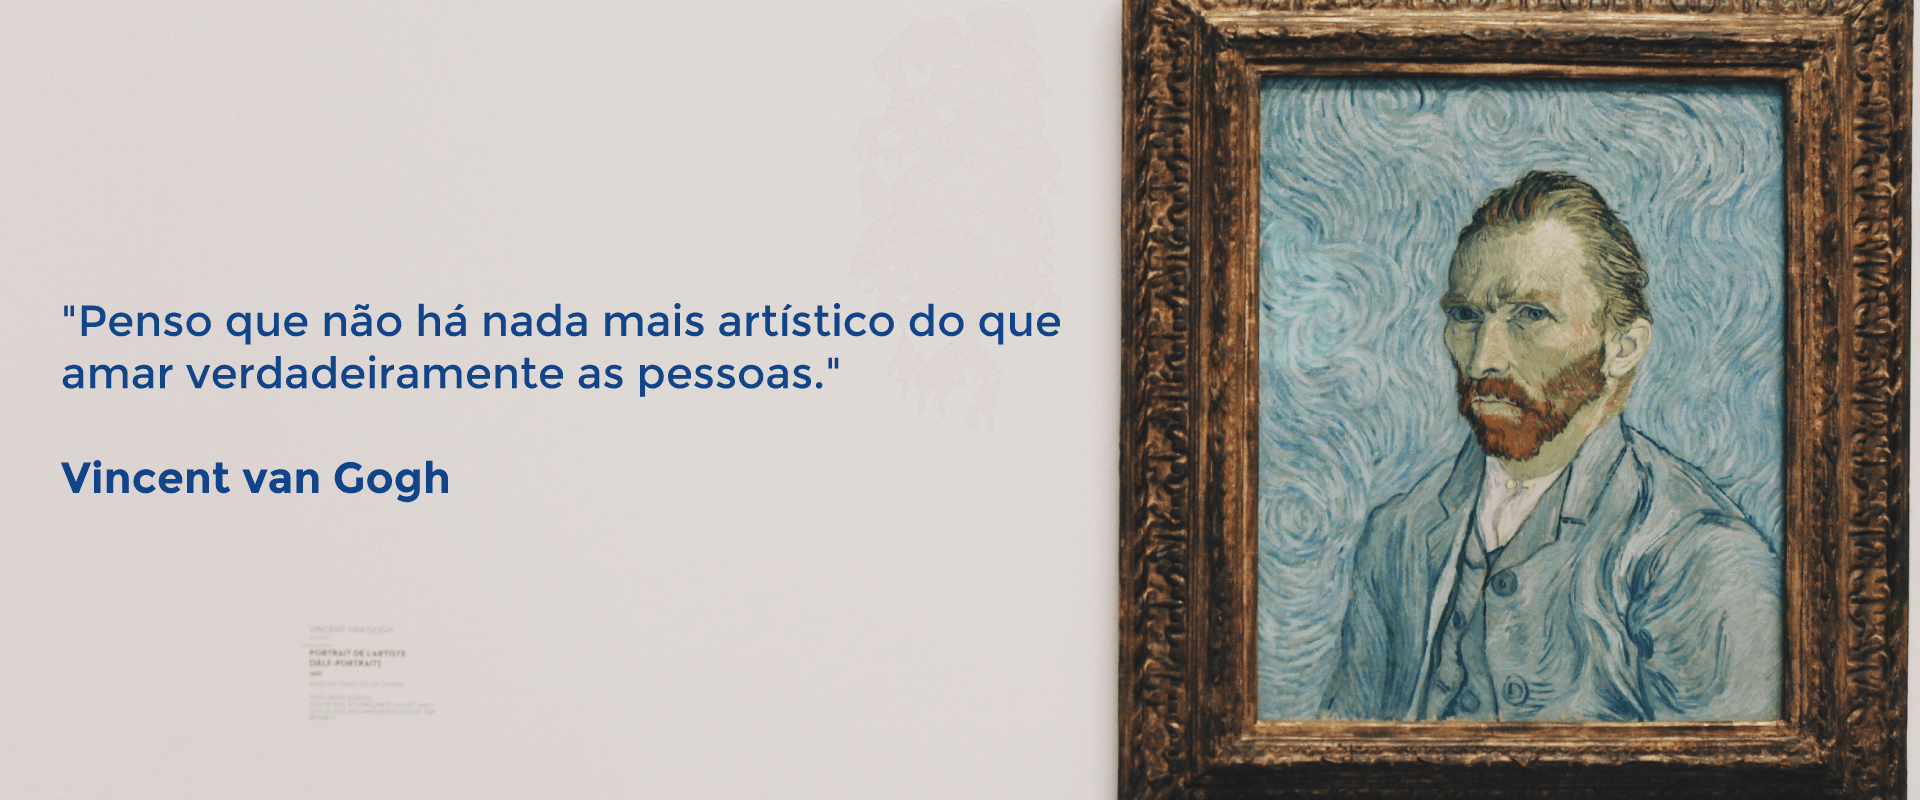 Texto Penso que não há nada mais artístico do que amar verdadeiramente as pessoas. ao lado esquedo e ao lado direito quadro do Vicent Van Gogh